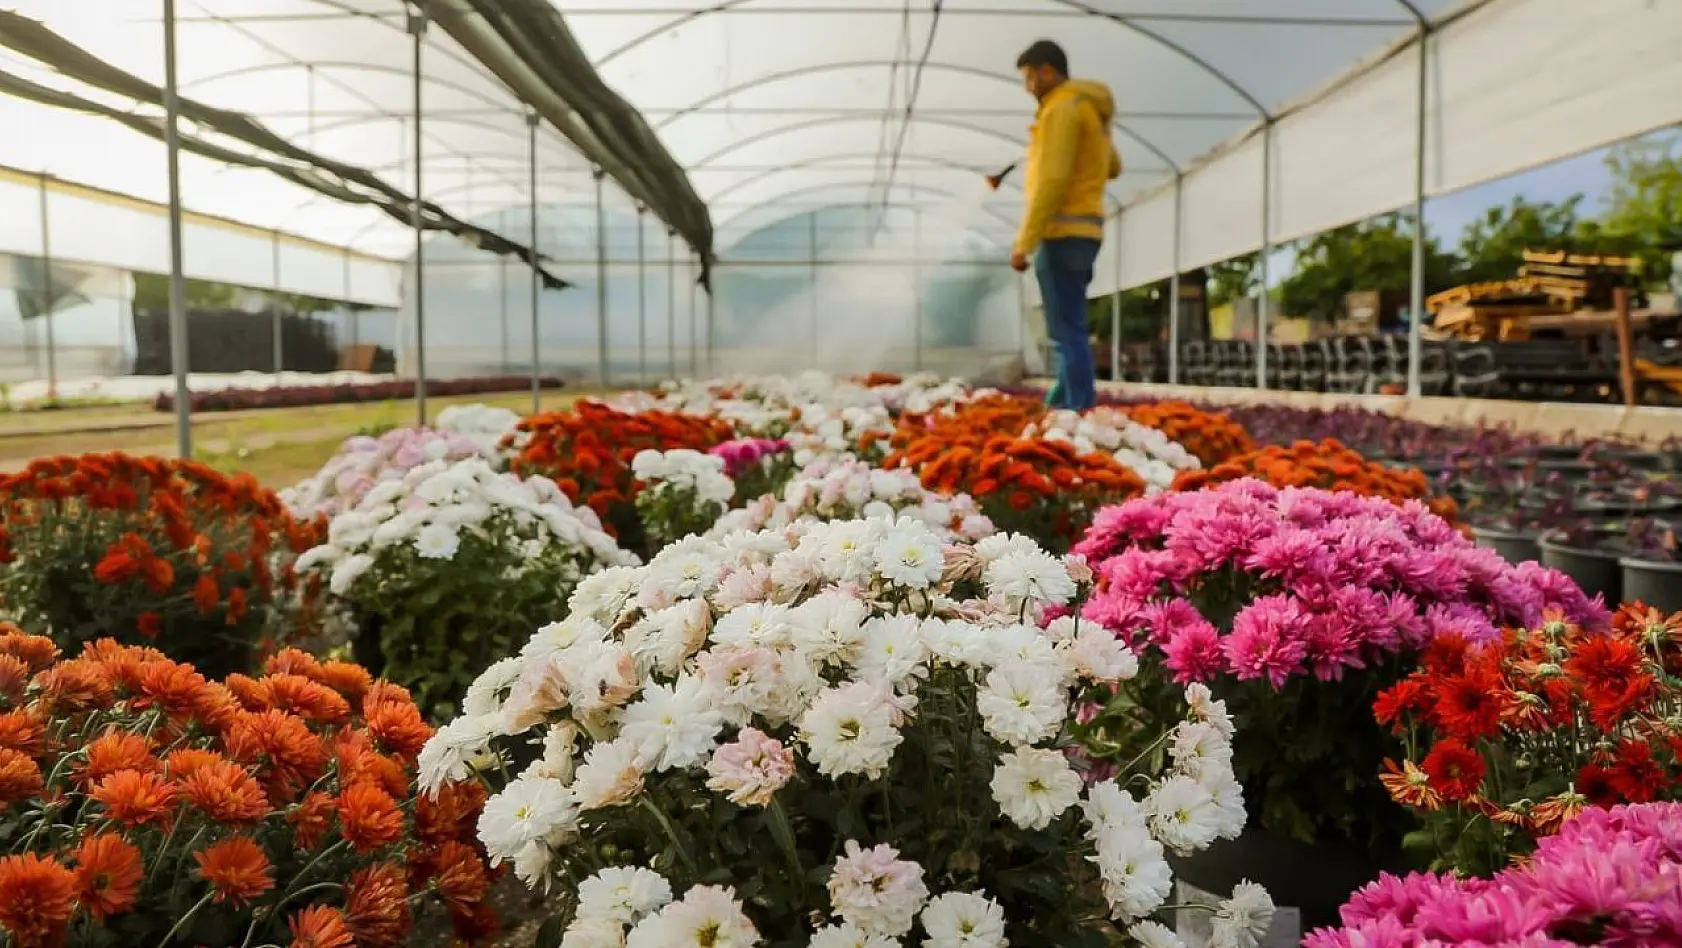 Büyükşehir Belediyesi Aydın'ı renklendiren çiçekleri kendi üretiyor